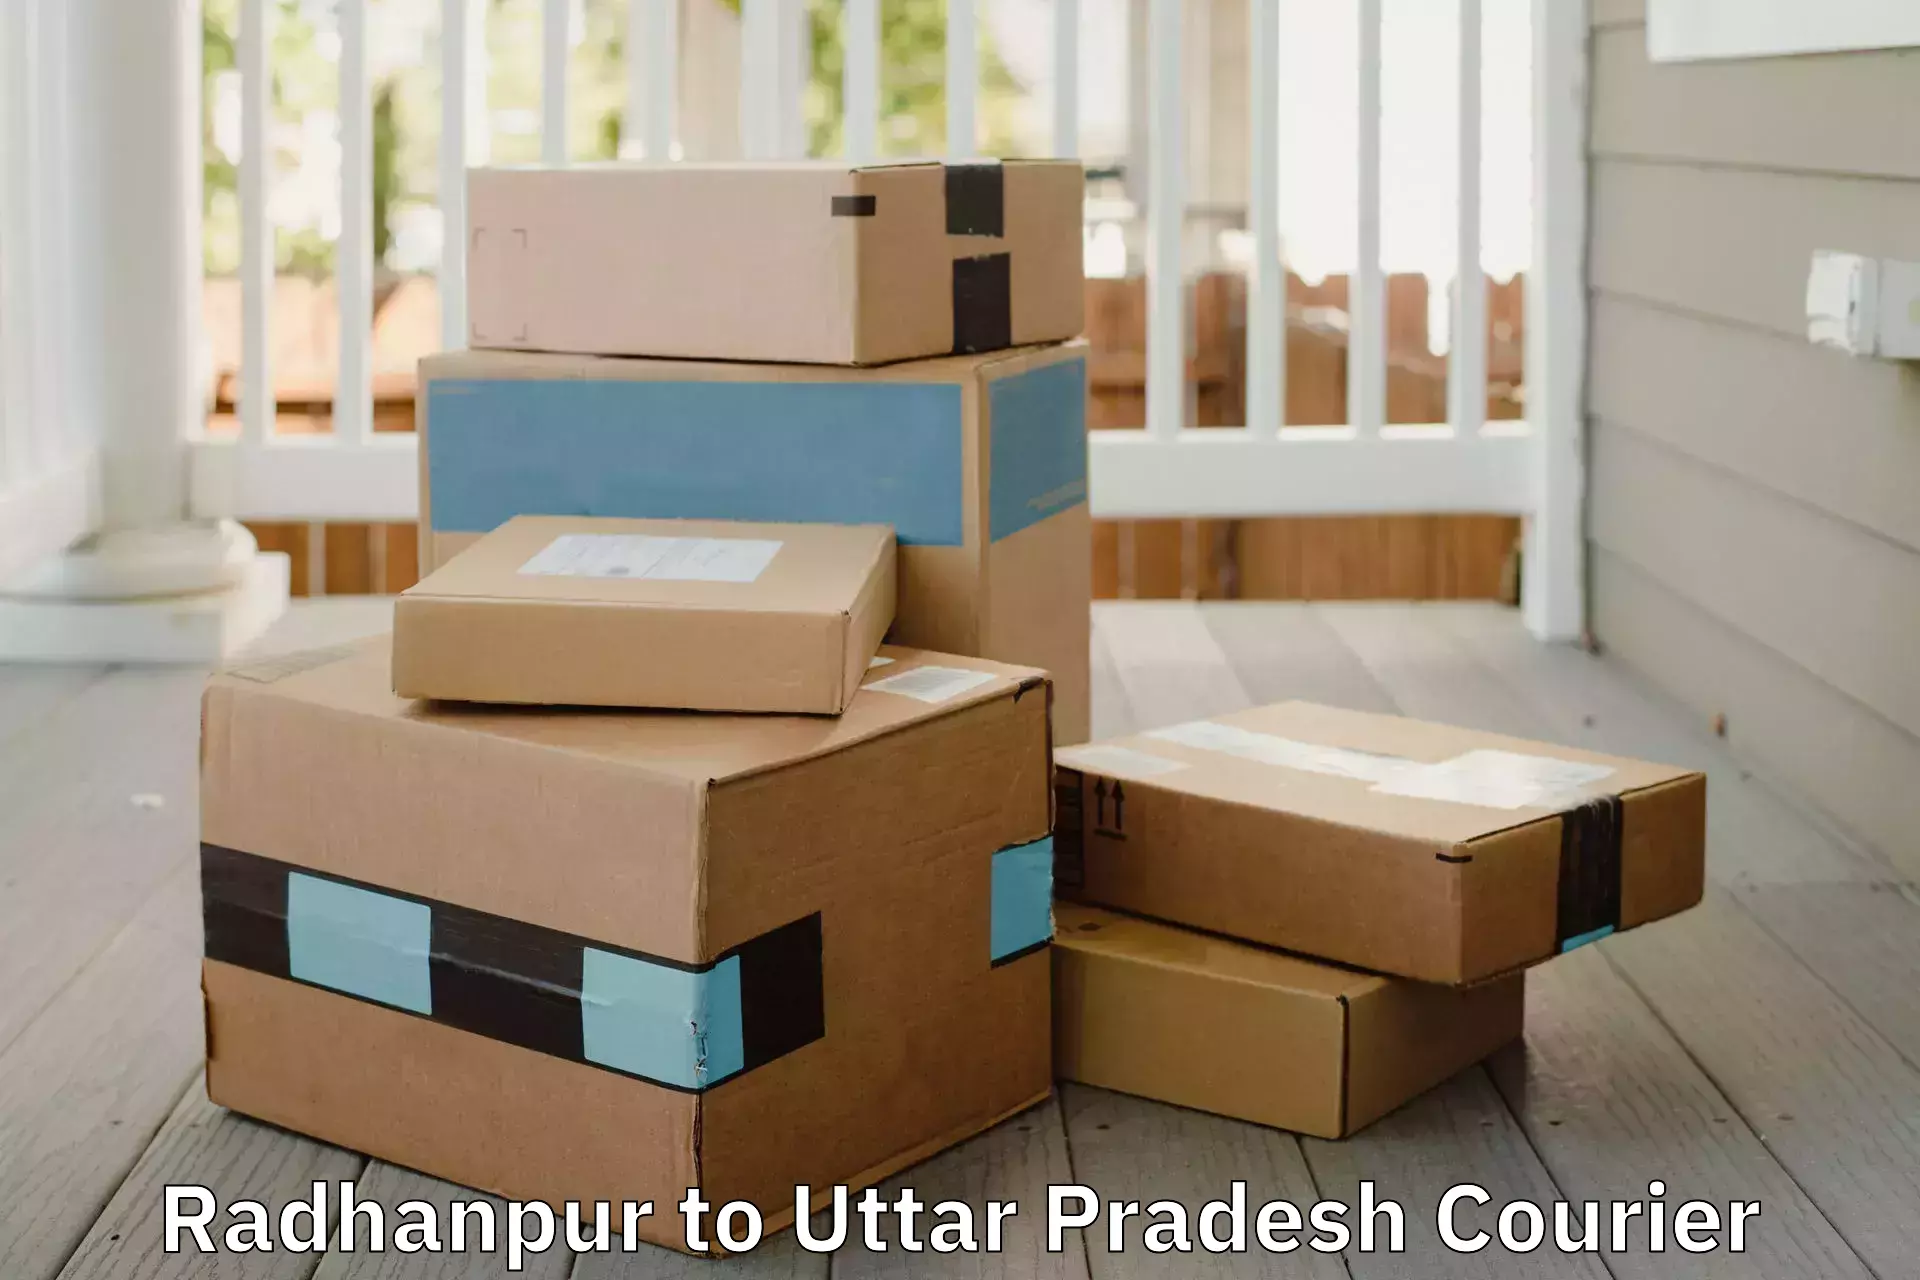 Furniture transport experts Radhanpur to Balrampur